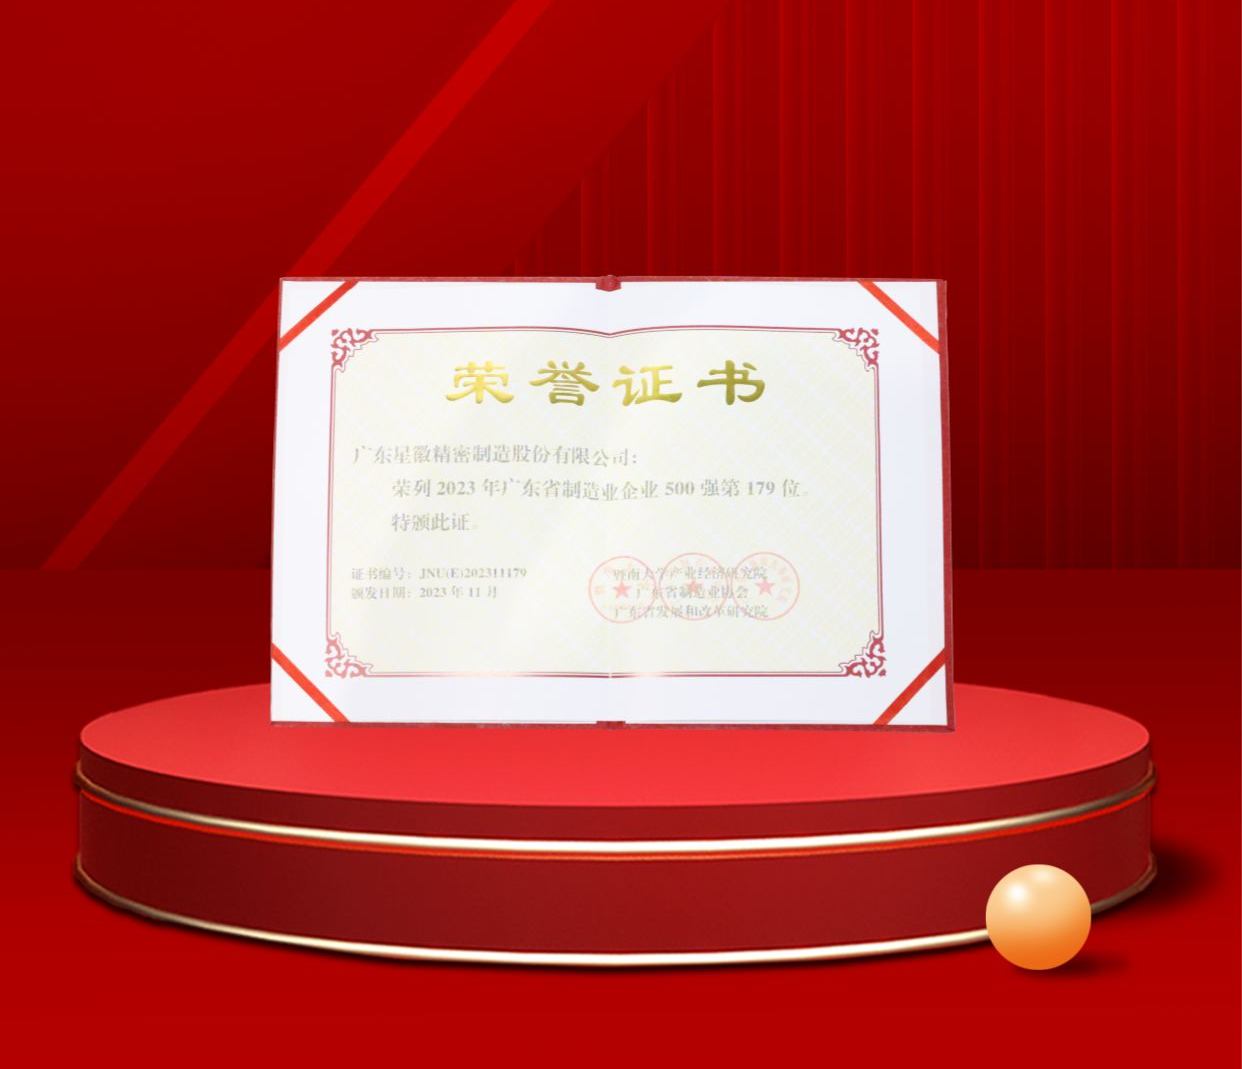 乐鱼app(中国)官方网站IOS/安卓通用版/手机APP荣列2023年广东省制造业企业500强第179位